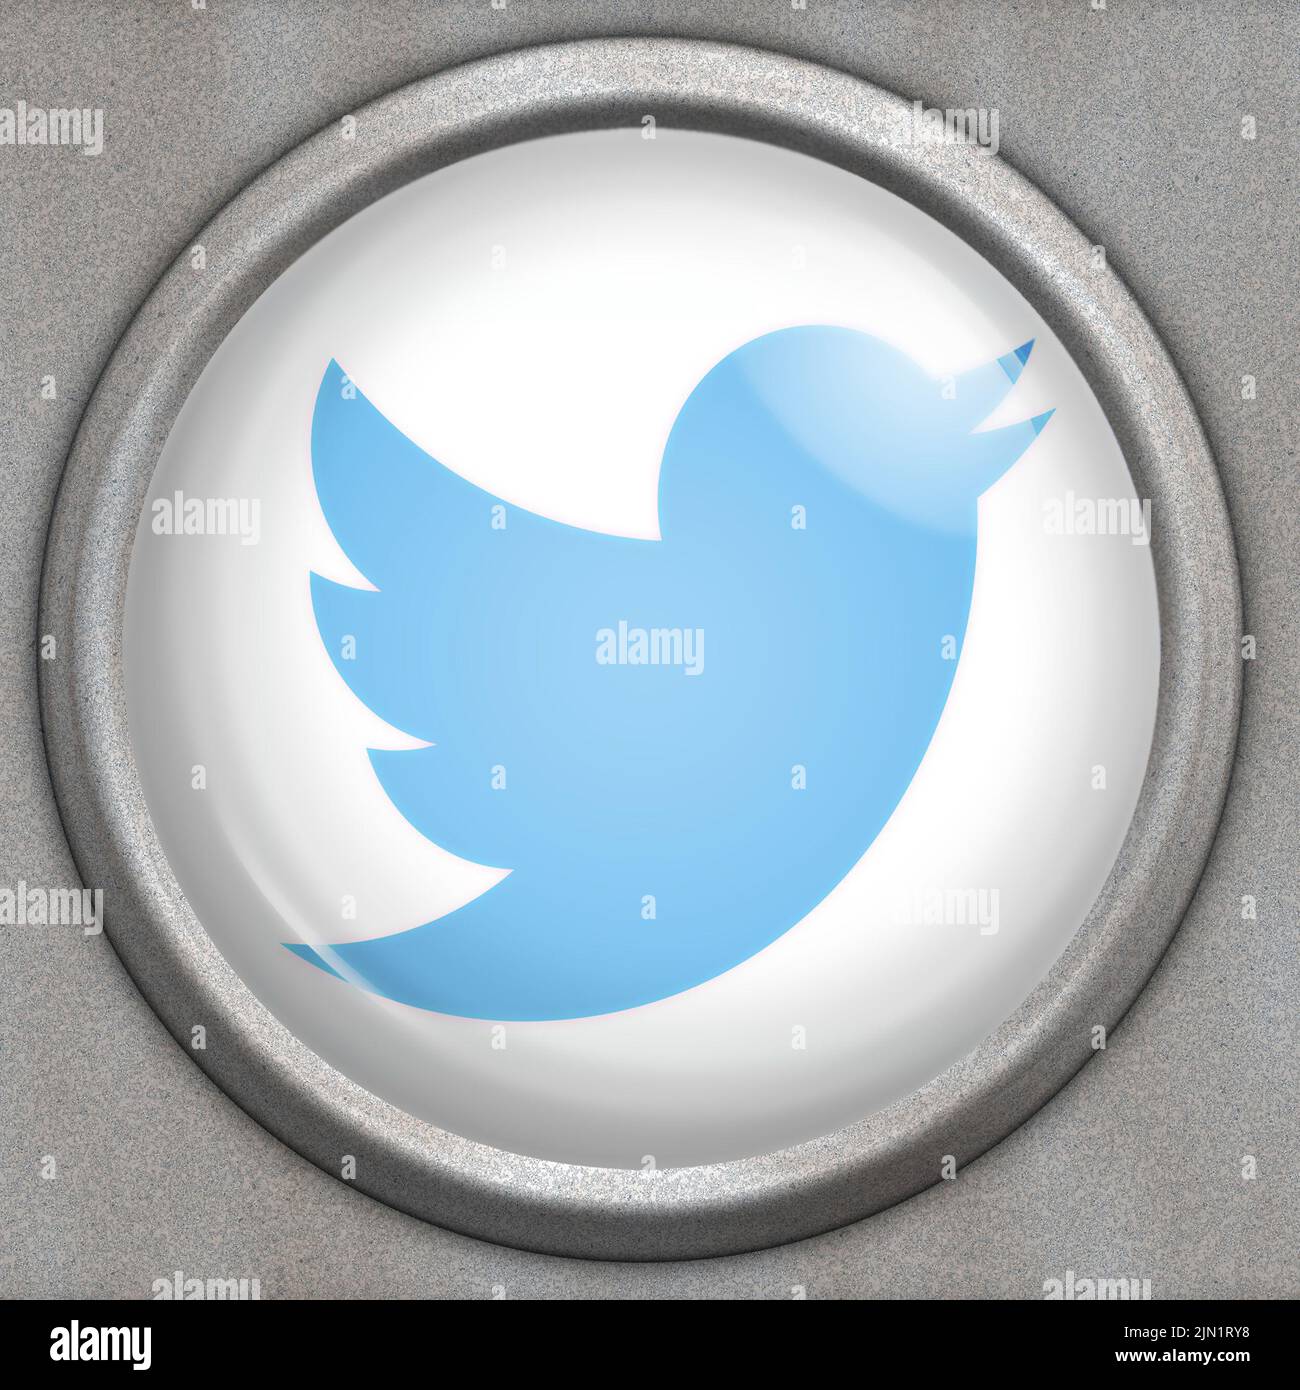 Bouton avec logo du service de médias sociaux Twitter Banque D'Images